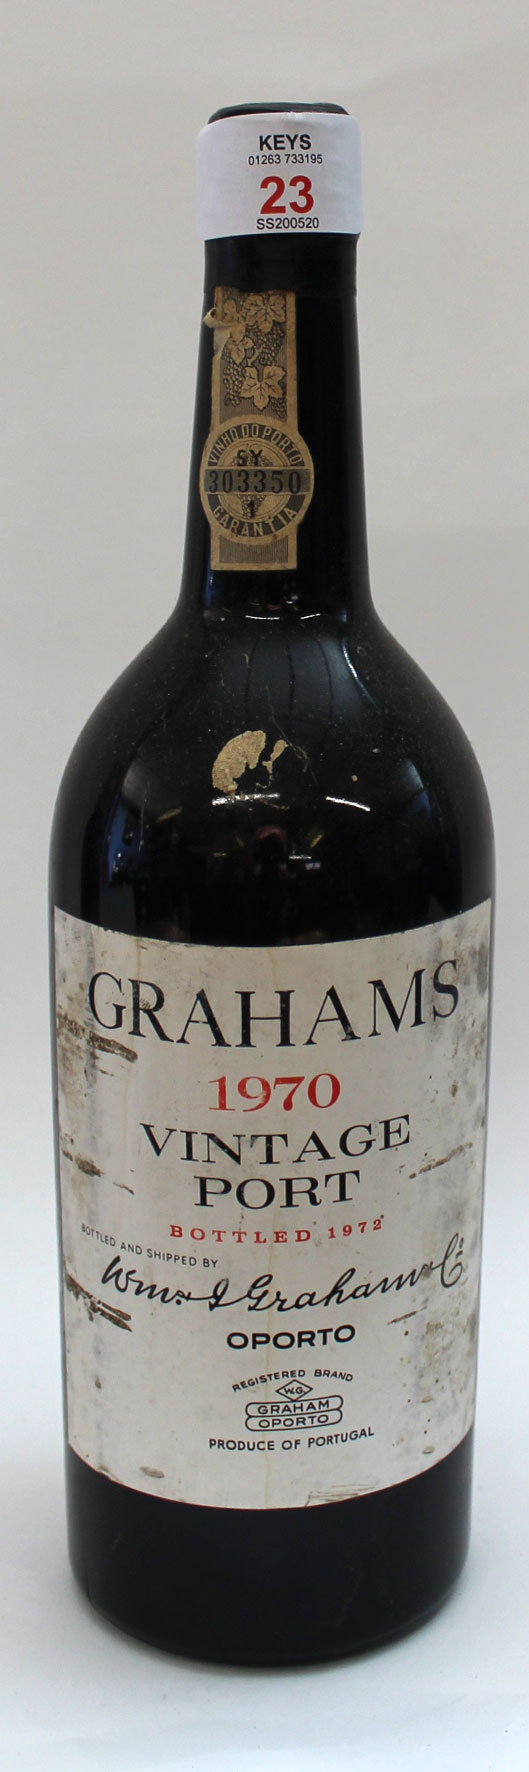 1970 Grahams Vintage Port, one bottle.